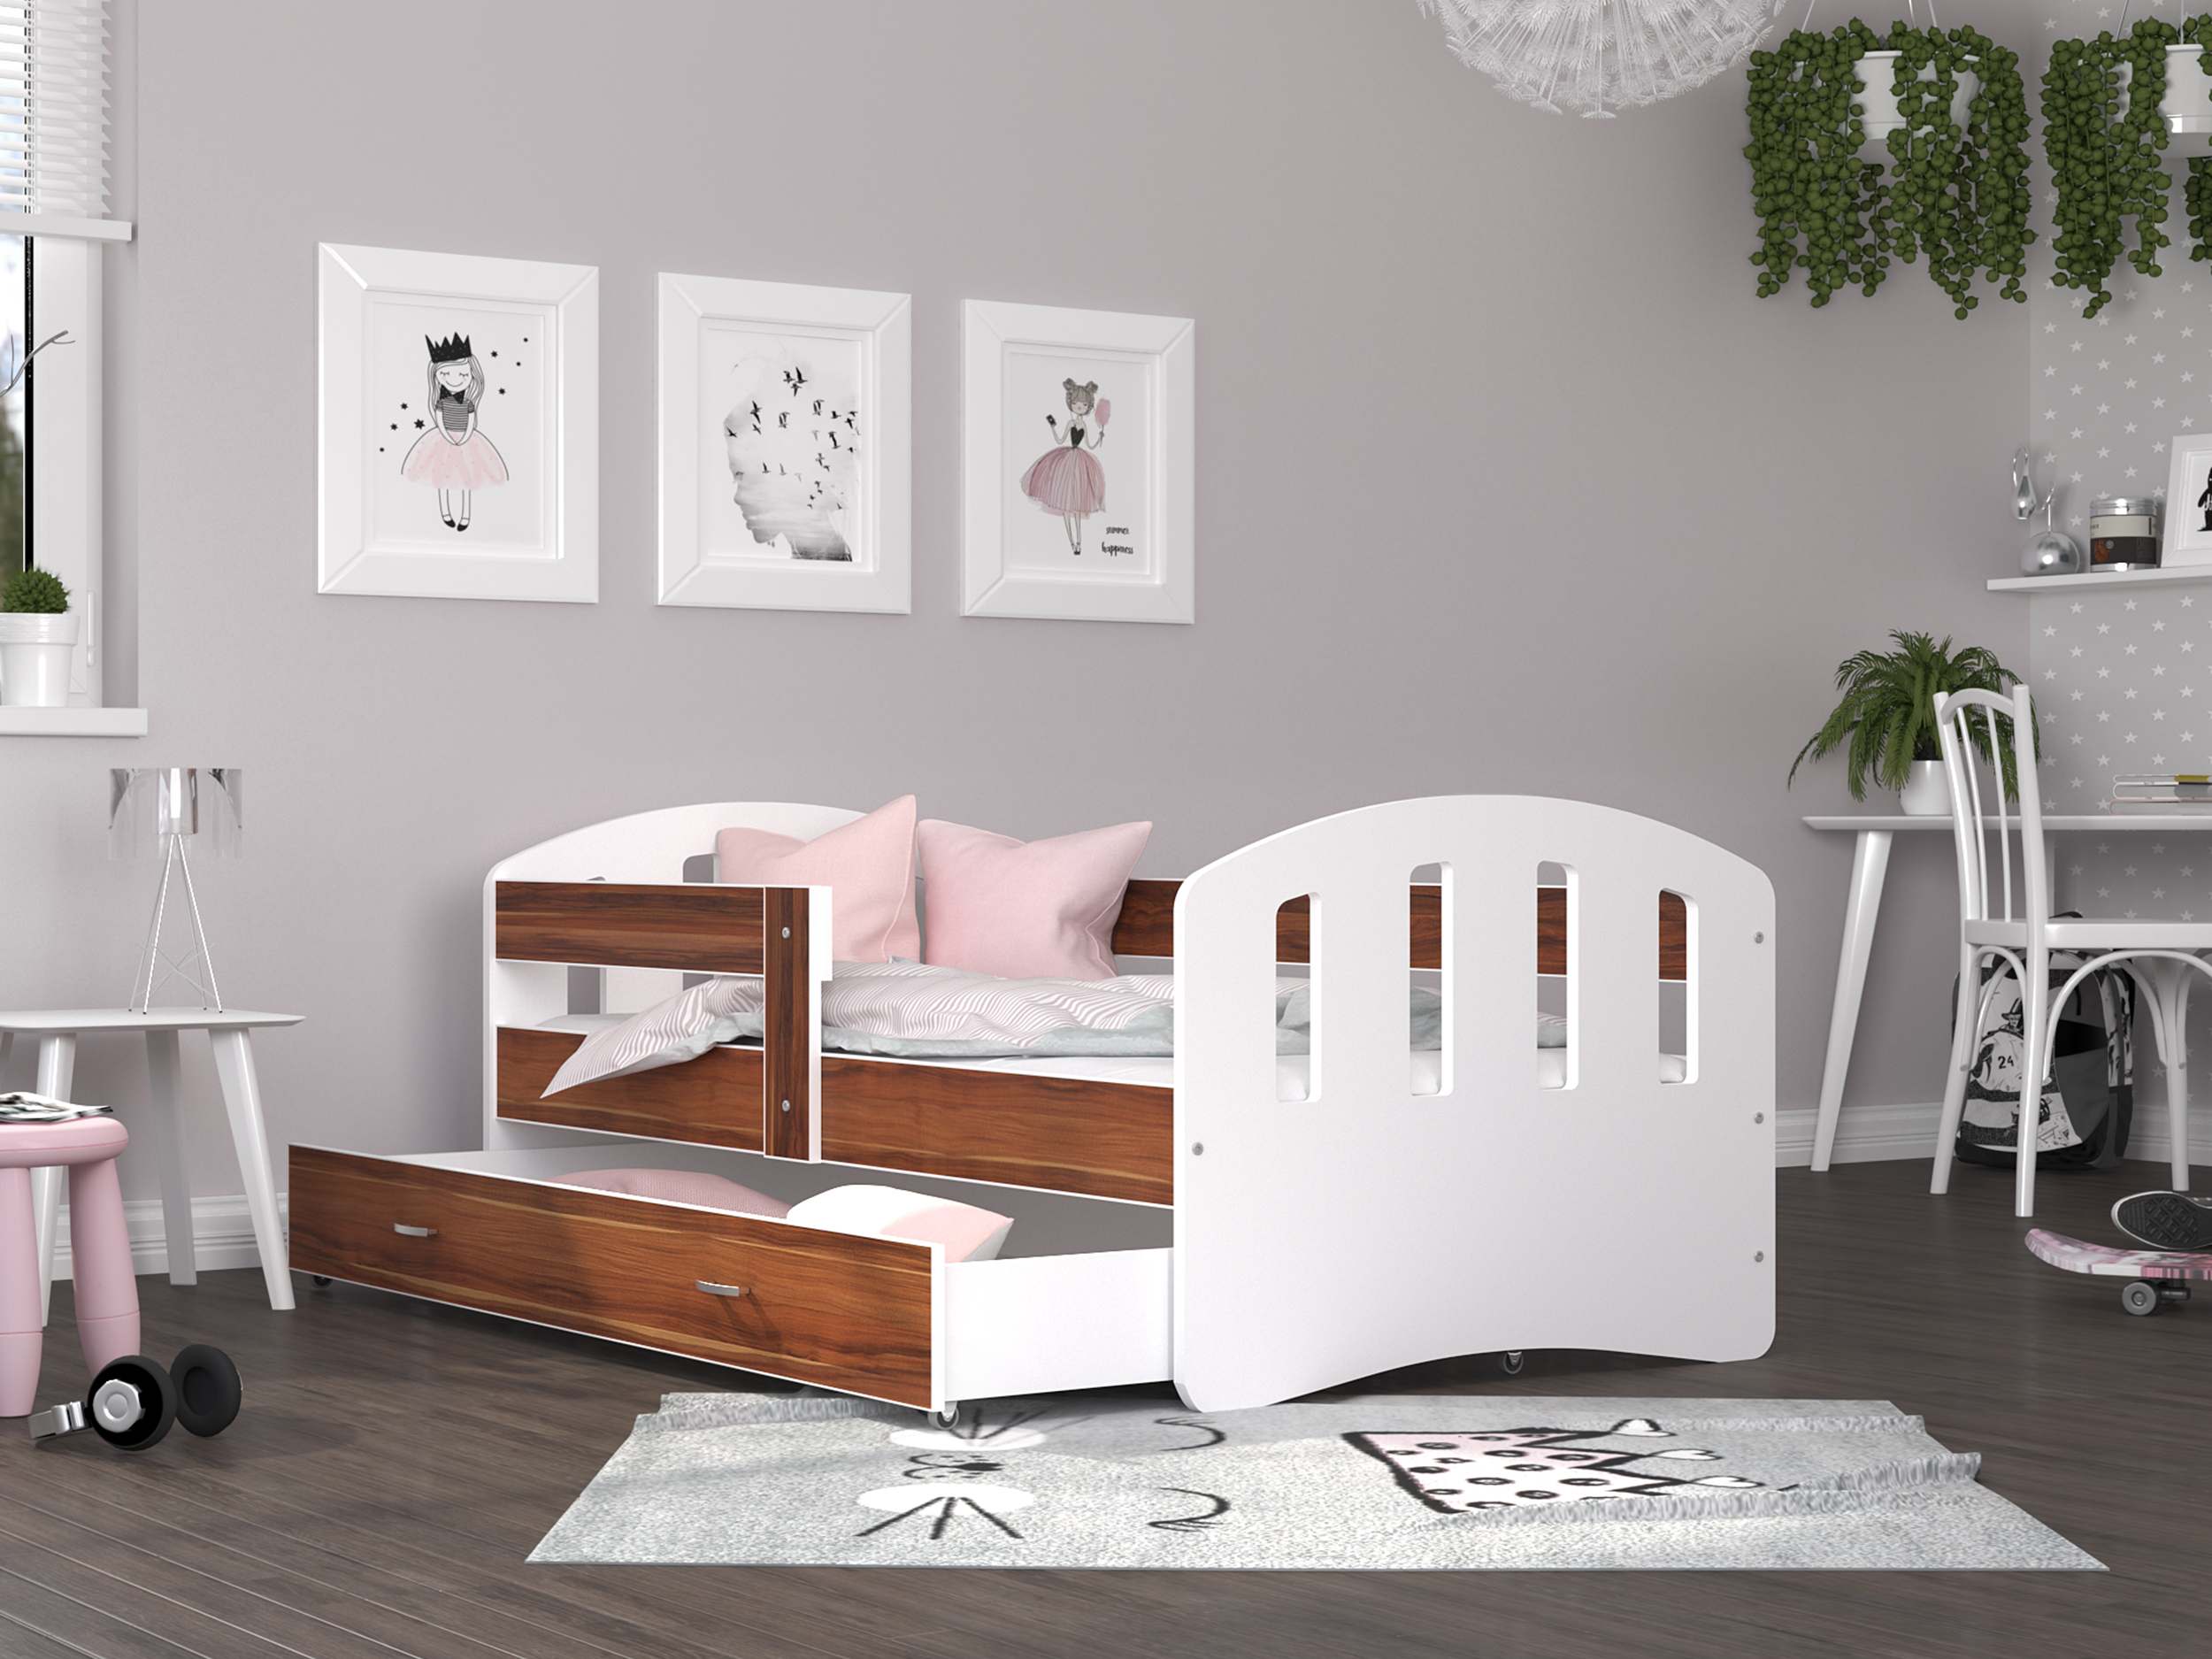 Postel pro děti s šuplíkem a se zábranama | Bezpečná dětská postel | Dětská postel | Postel se šuplíkem | Postel se zábranama